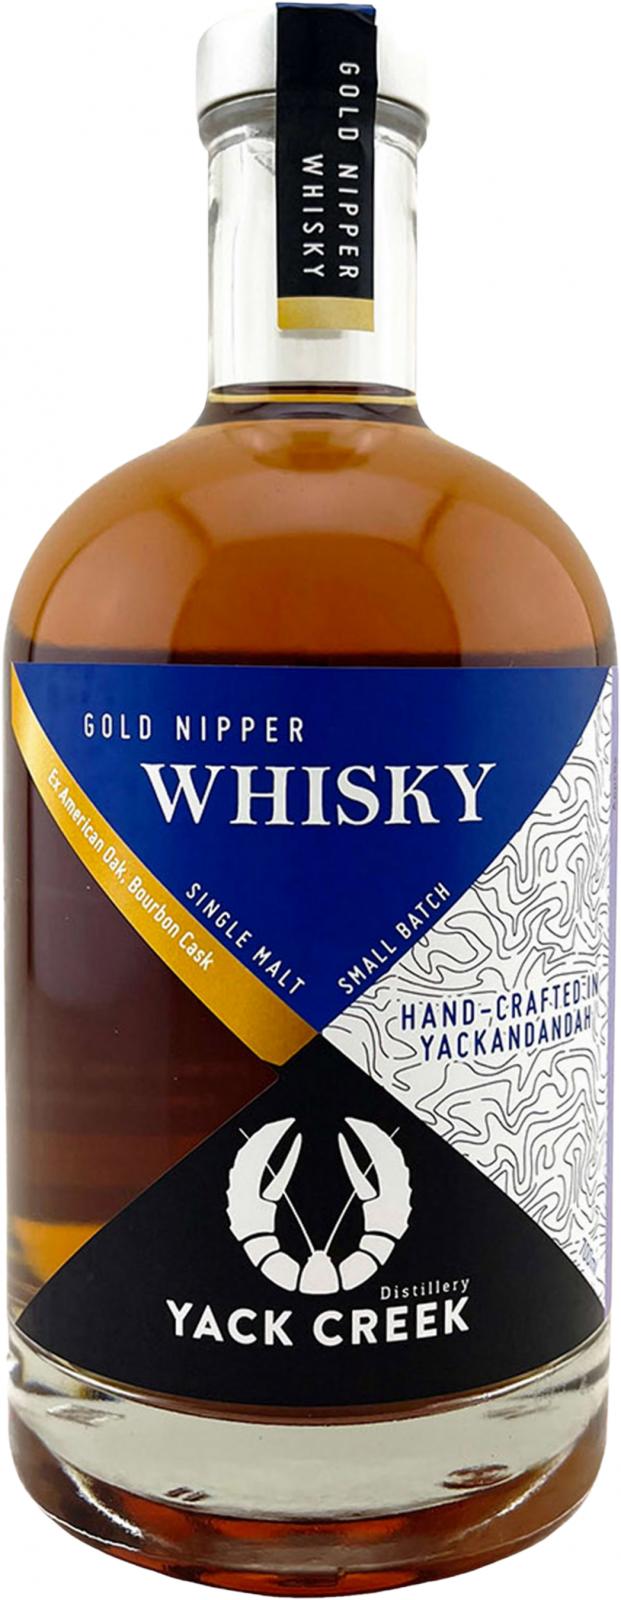 Yack Creek Gold Nipper Whisky #10 60% 700ml